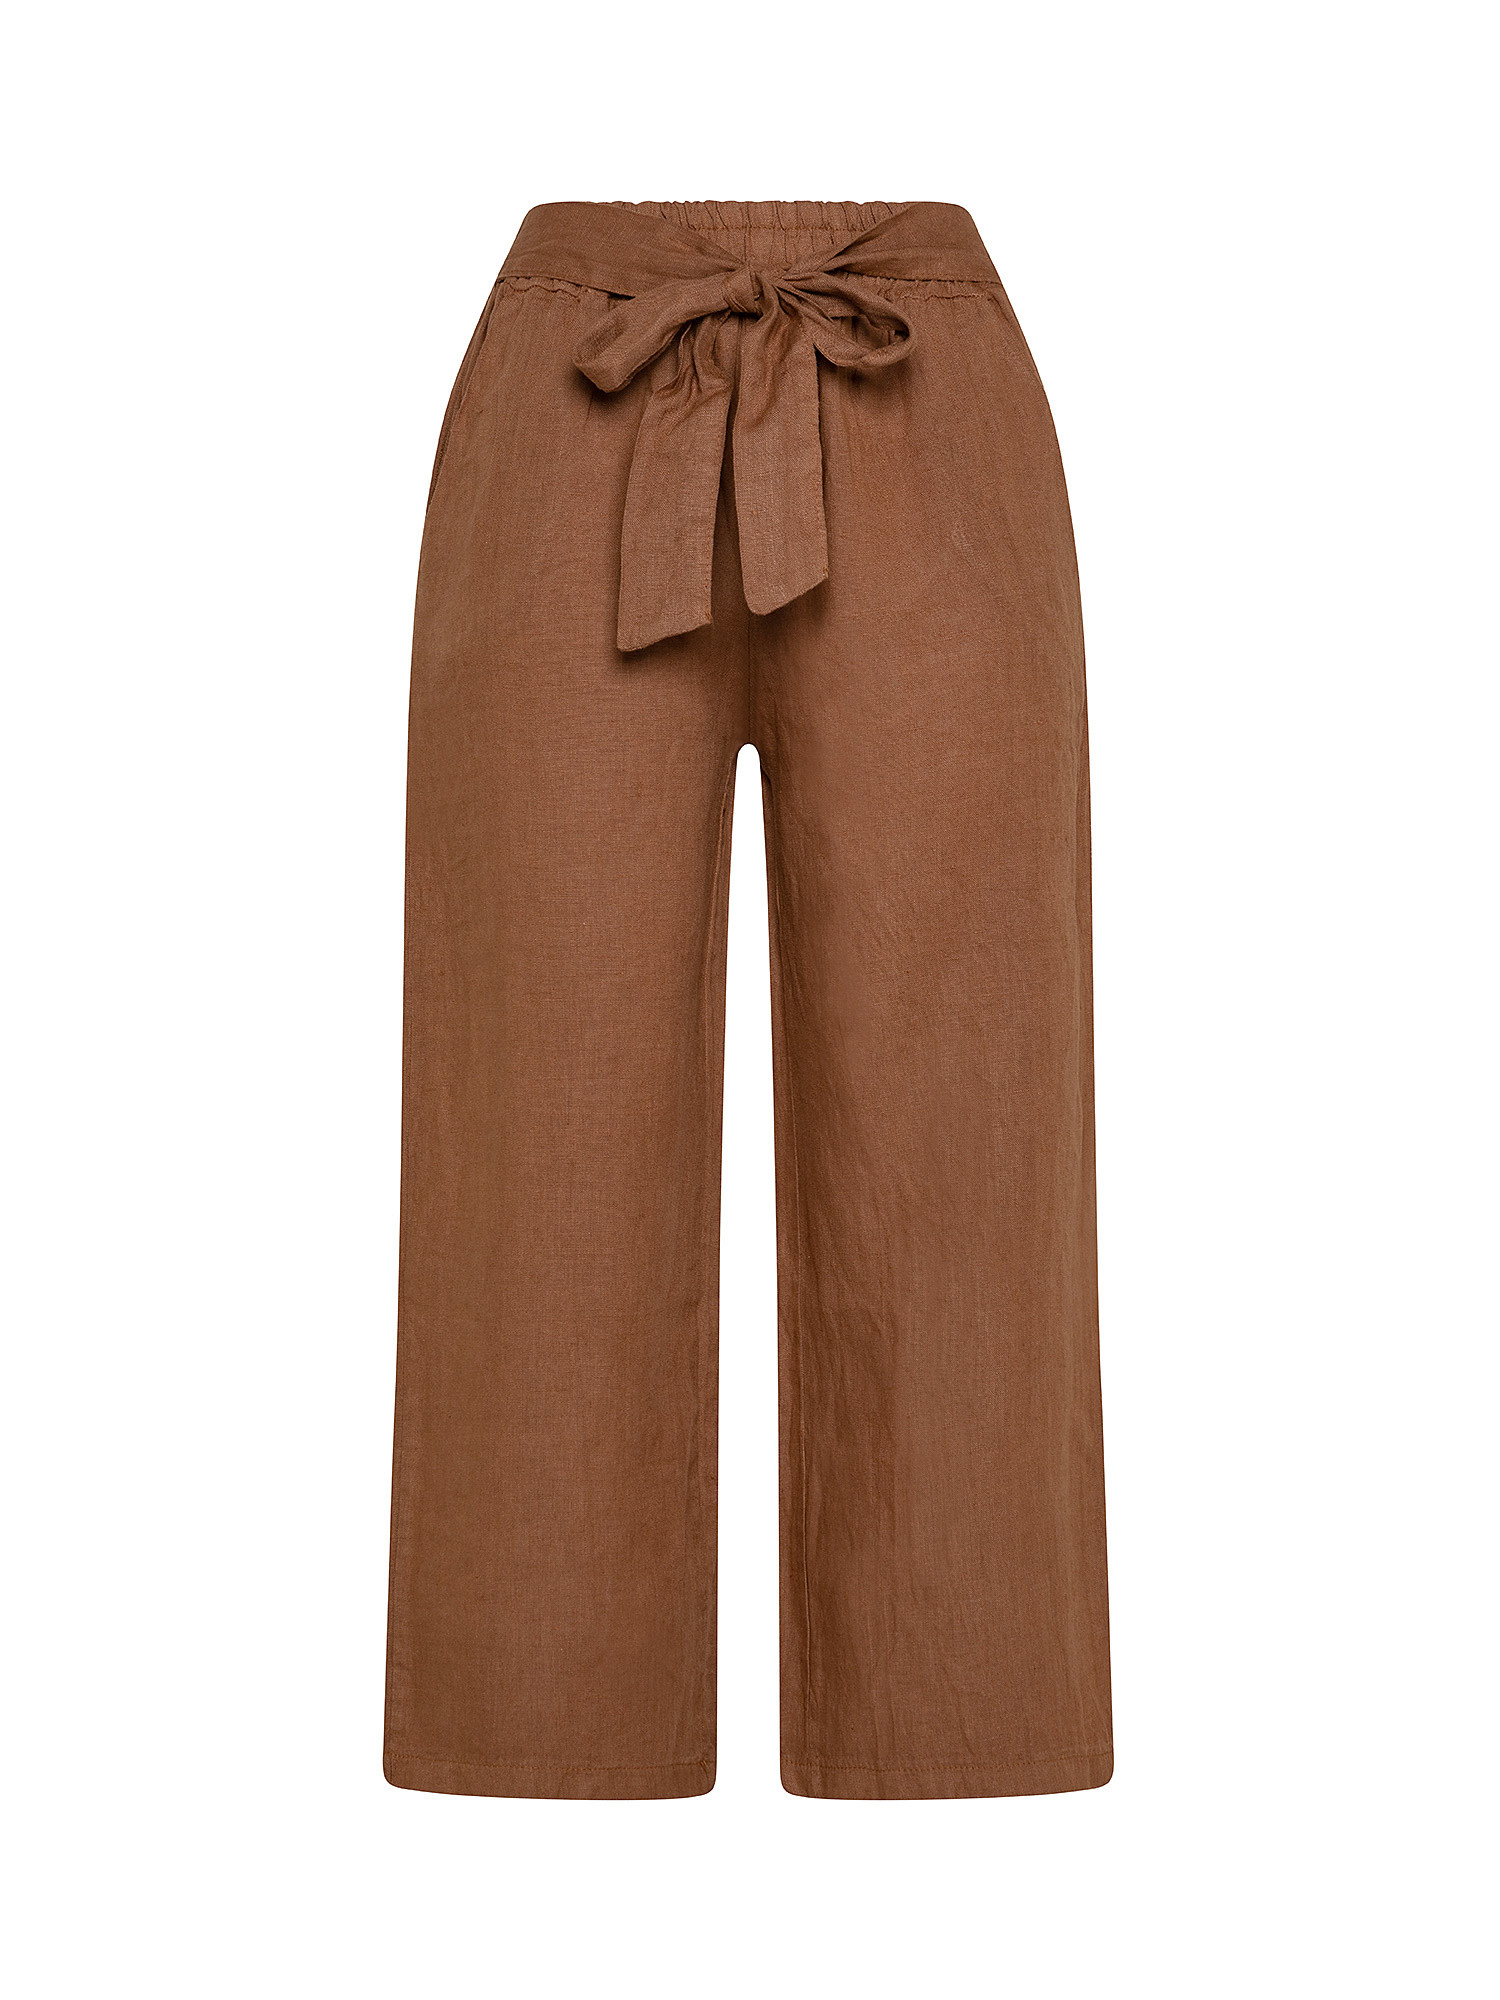 Pantalone puro lino con fusciacca, Marrone, large image number 0